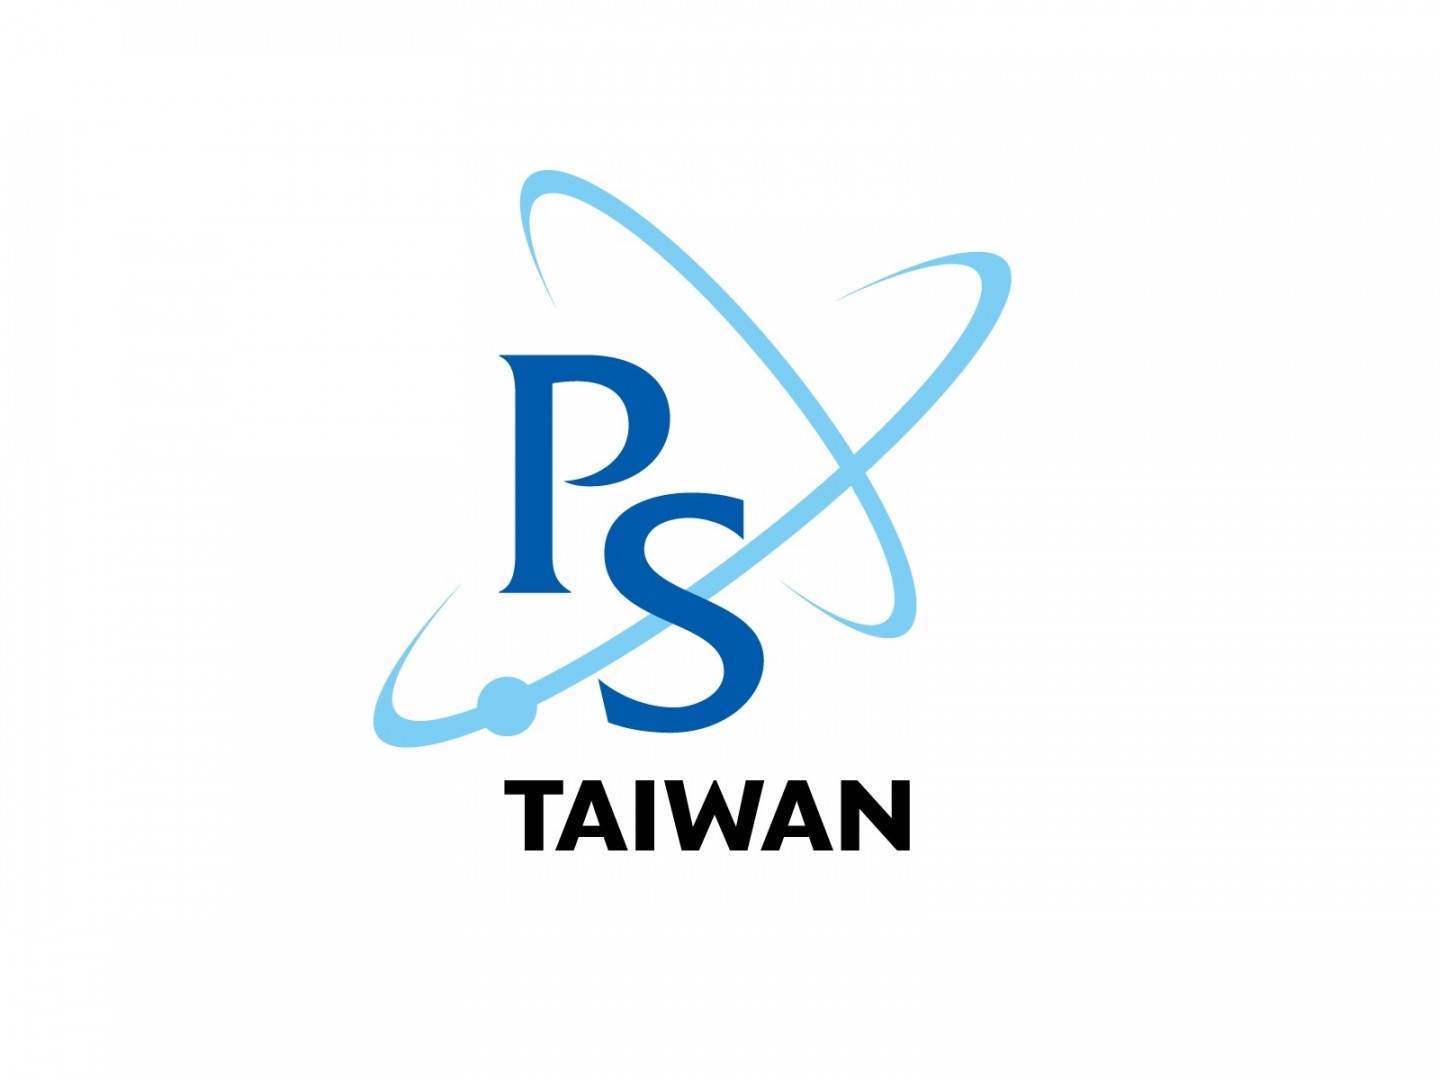  社團法人台灣物理學會第55屆理監事改選通知 